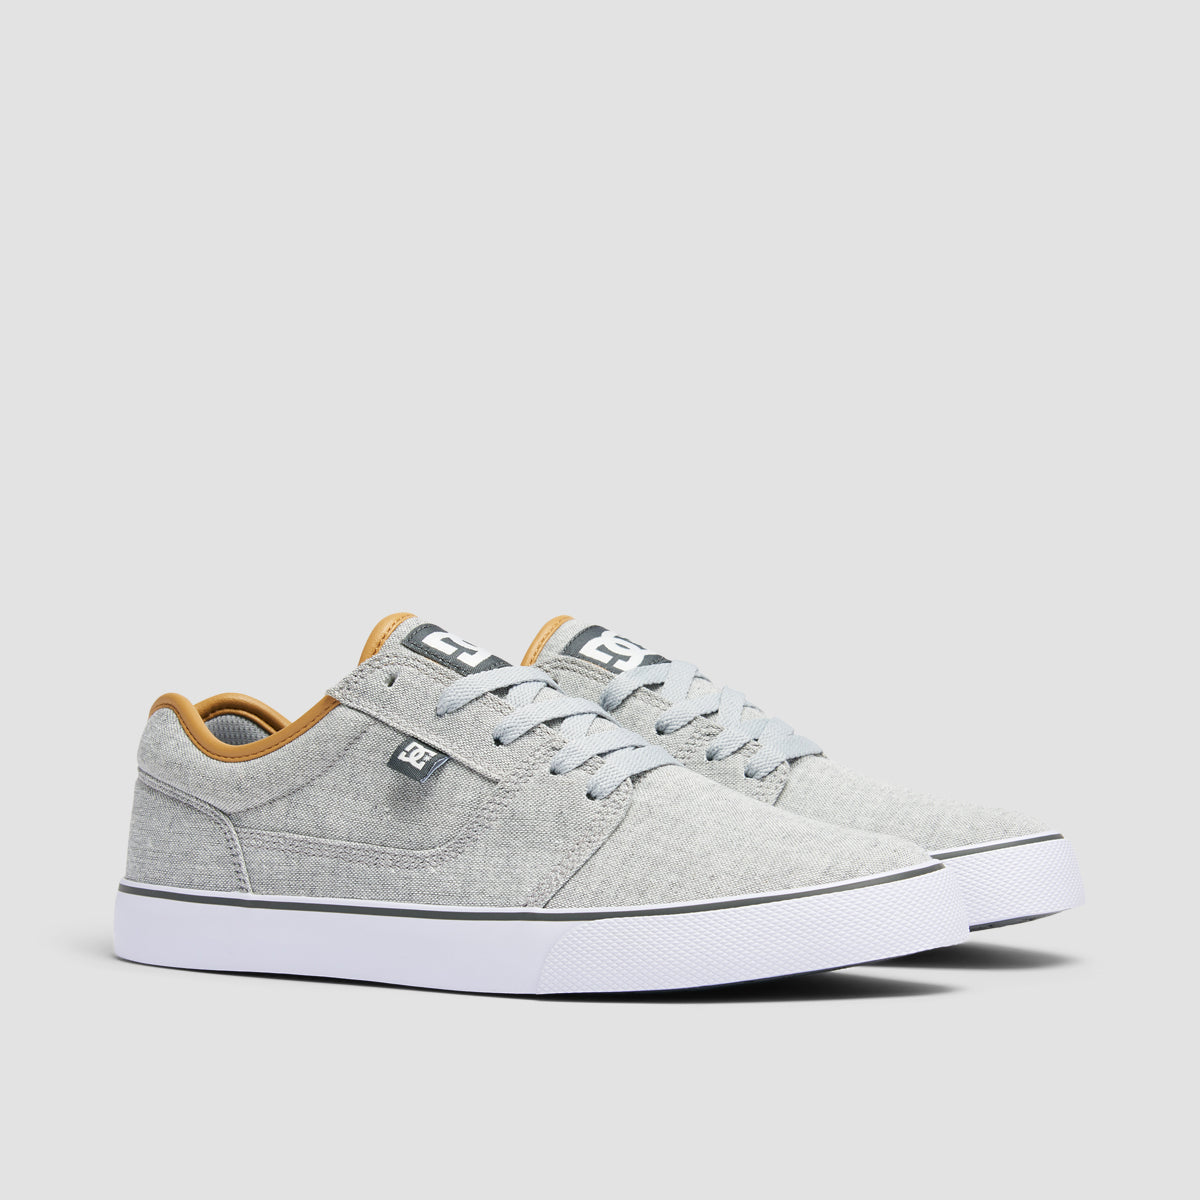 DC Tonik TX SE Shoes - Light Grey/Khaki